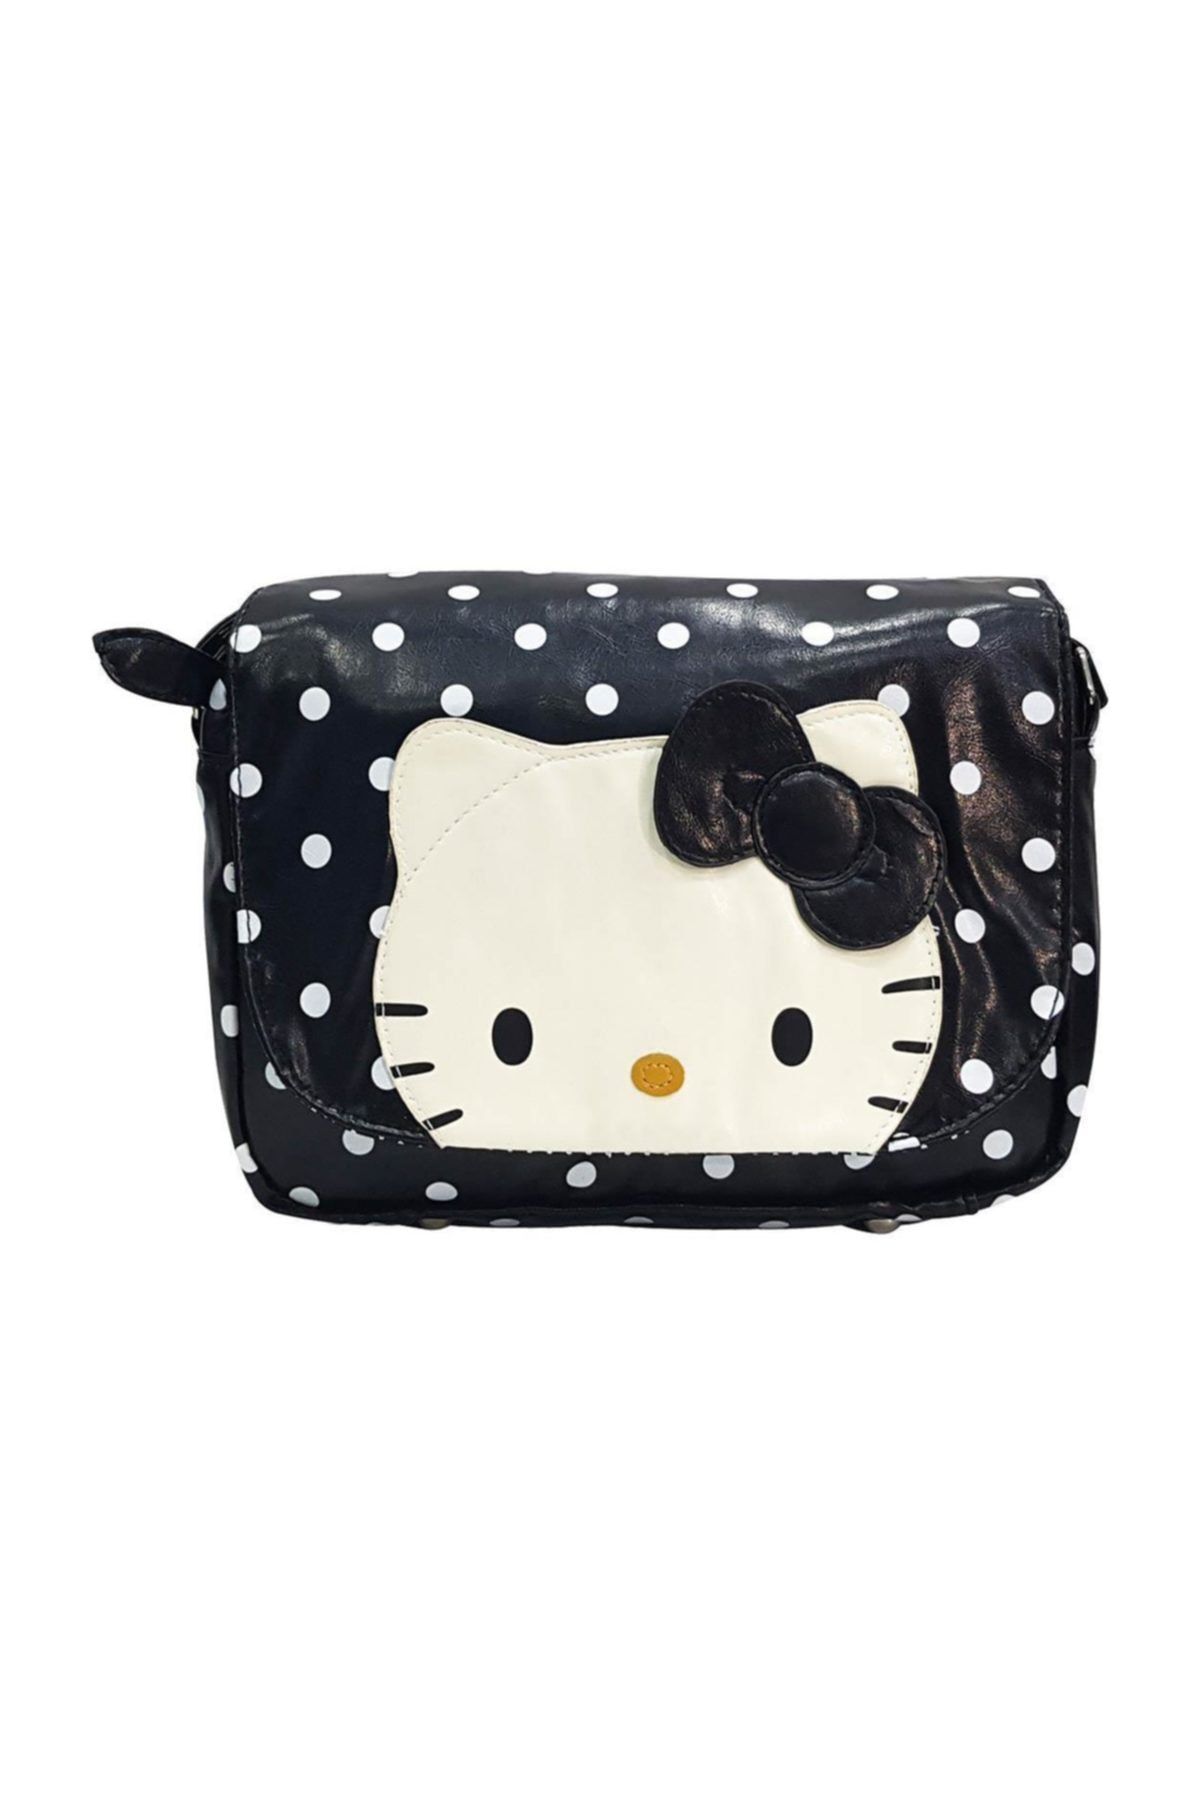 Hakan Çanta Hello Kitty Omuz Askılı Kız Çantası Siyah 35225